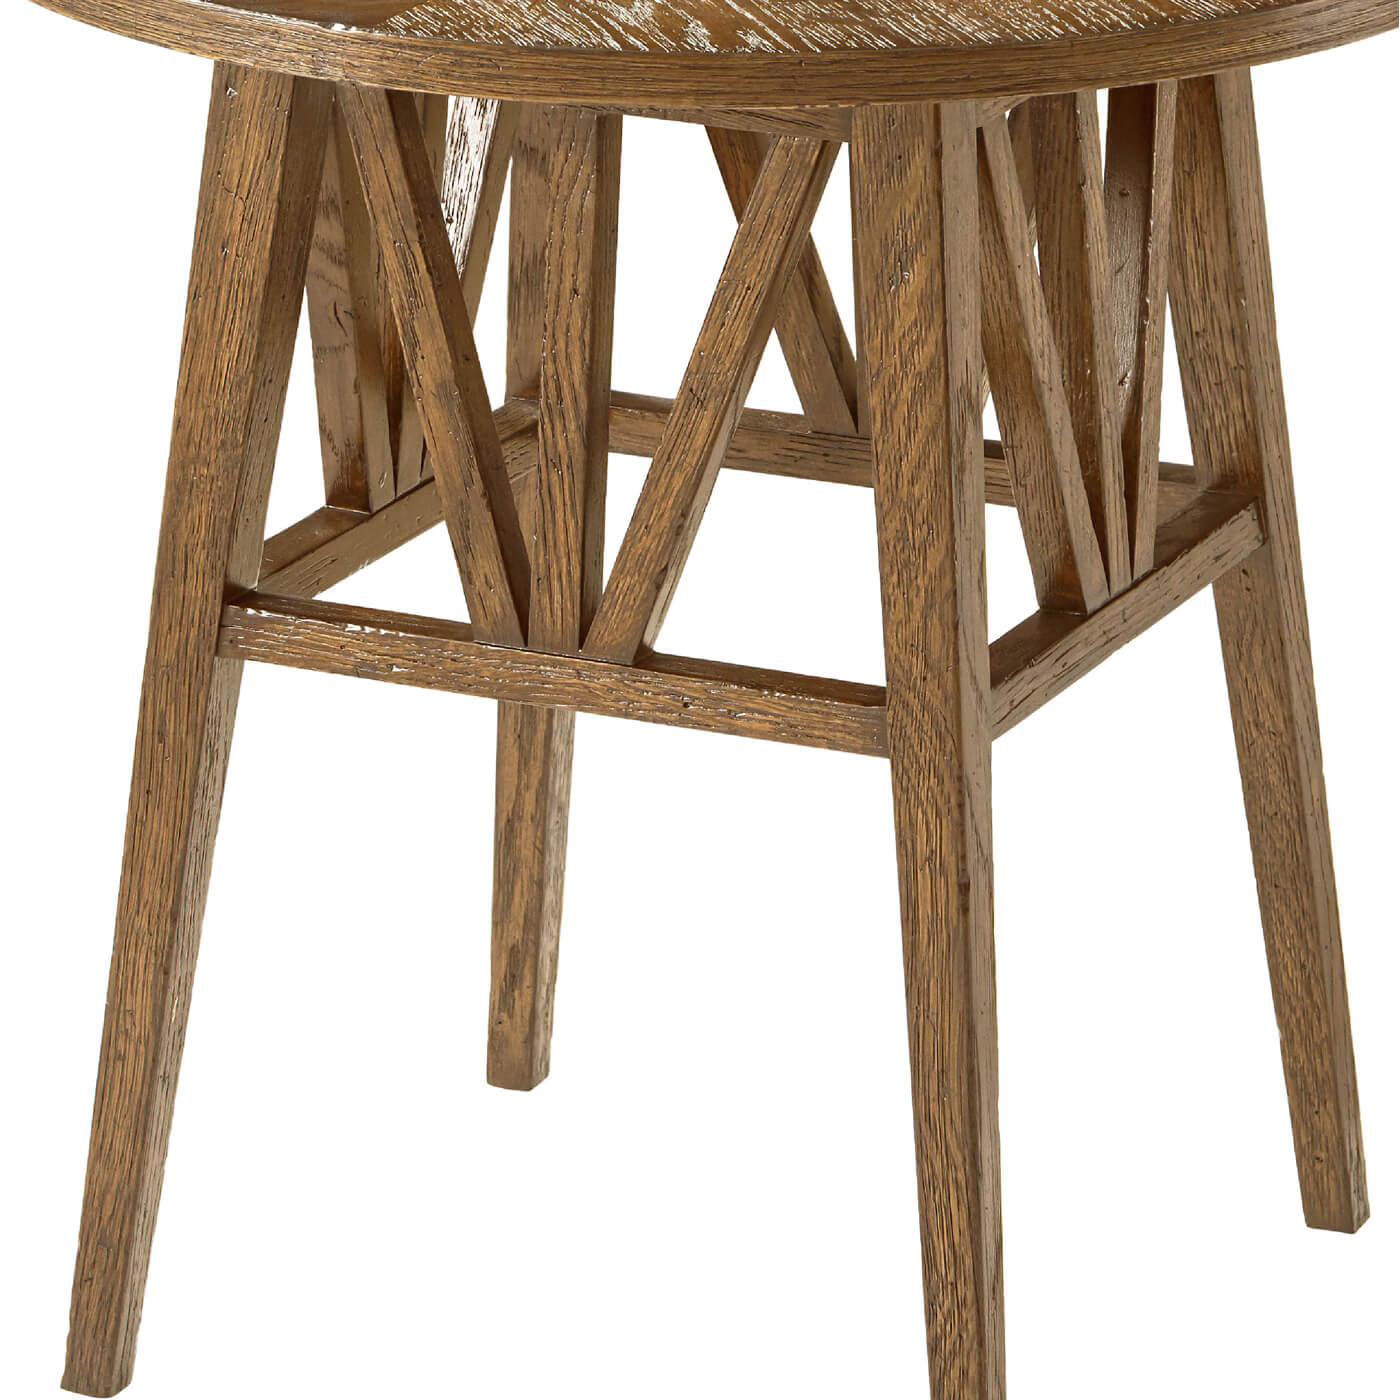 Une table d'appoint ronde en chêne rustique, moderne et légère, avec un motif géométrique en chêne sur le plateau rond. Il est fabriqué avec un châssis en chêne à treillis plat et un pied en chêne conique. 
Finition de l'aube
Dimensions
22